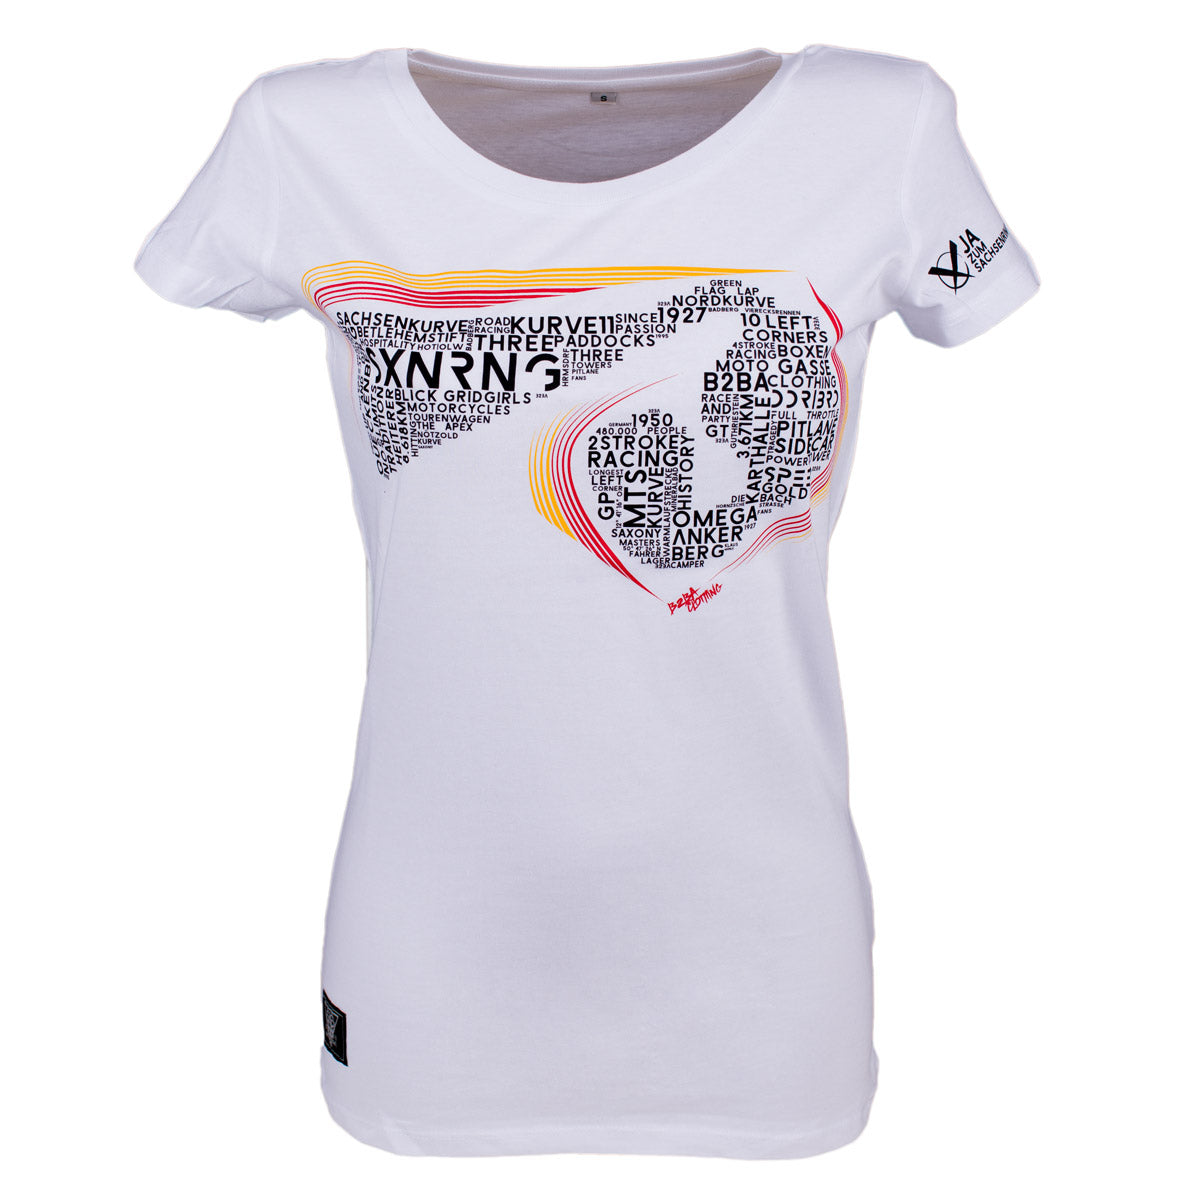 SXNRNG Girlie T-Shirt Weiß - B2BA Clothing white / S